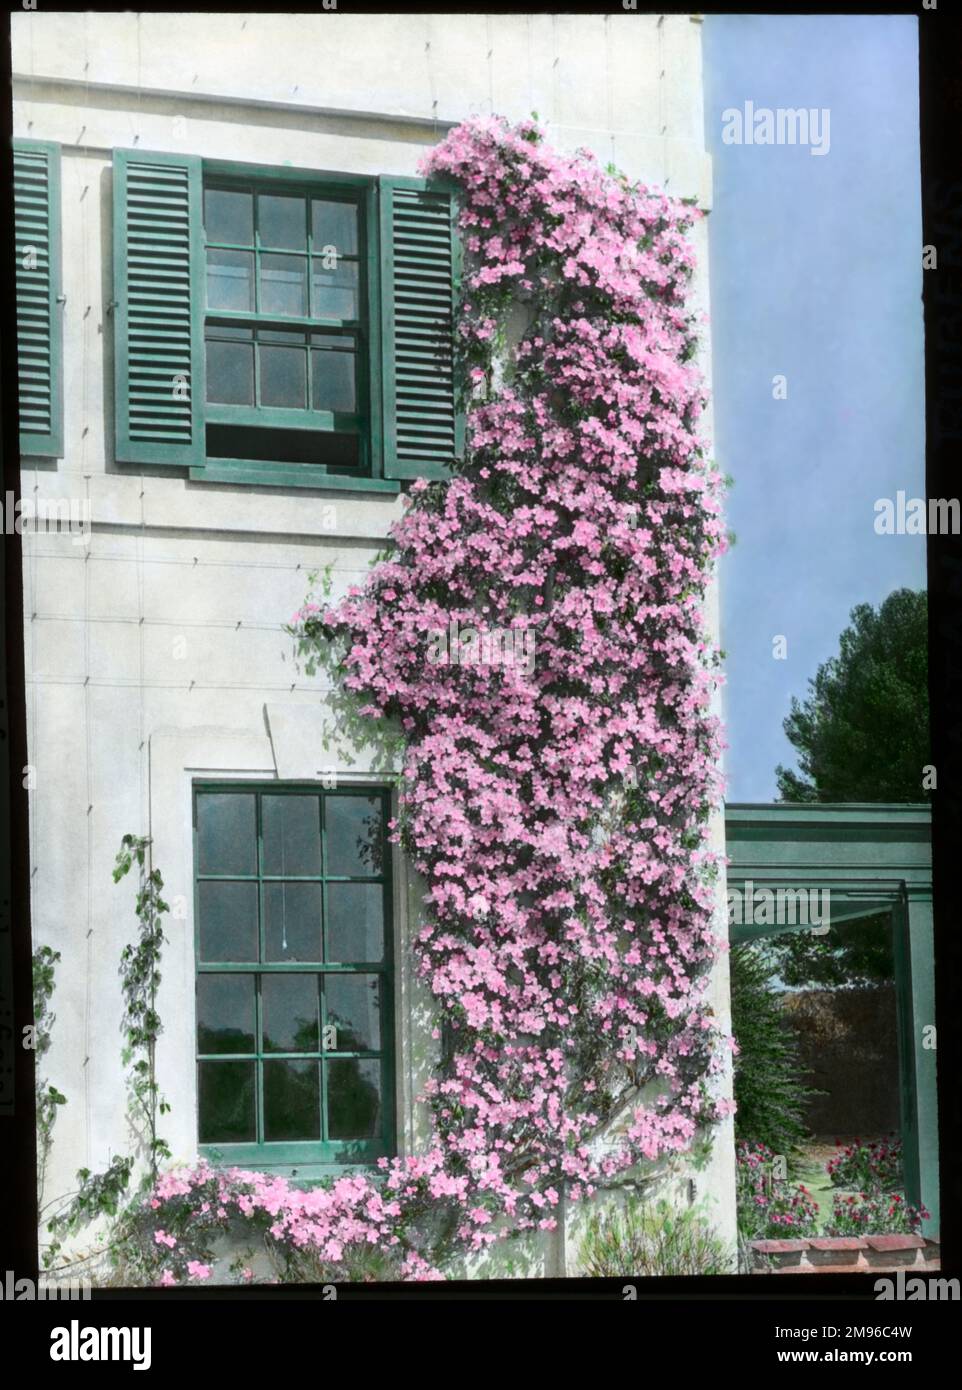 Clematis Montana Rubens, eine robuste Kletterpflanze der Butterblütenfamilie Ranunculaceae, mit rosa Blumen. Hier an der Seite eines Hauses aufwachsen zu sehen, in einem schönen Kontrast zu den weißen Wänden und grünen Fensterläden. Stockfoto